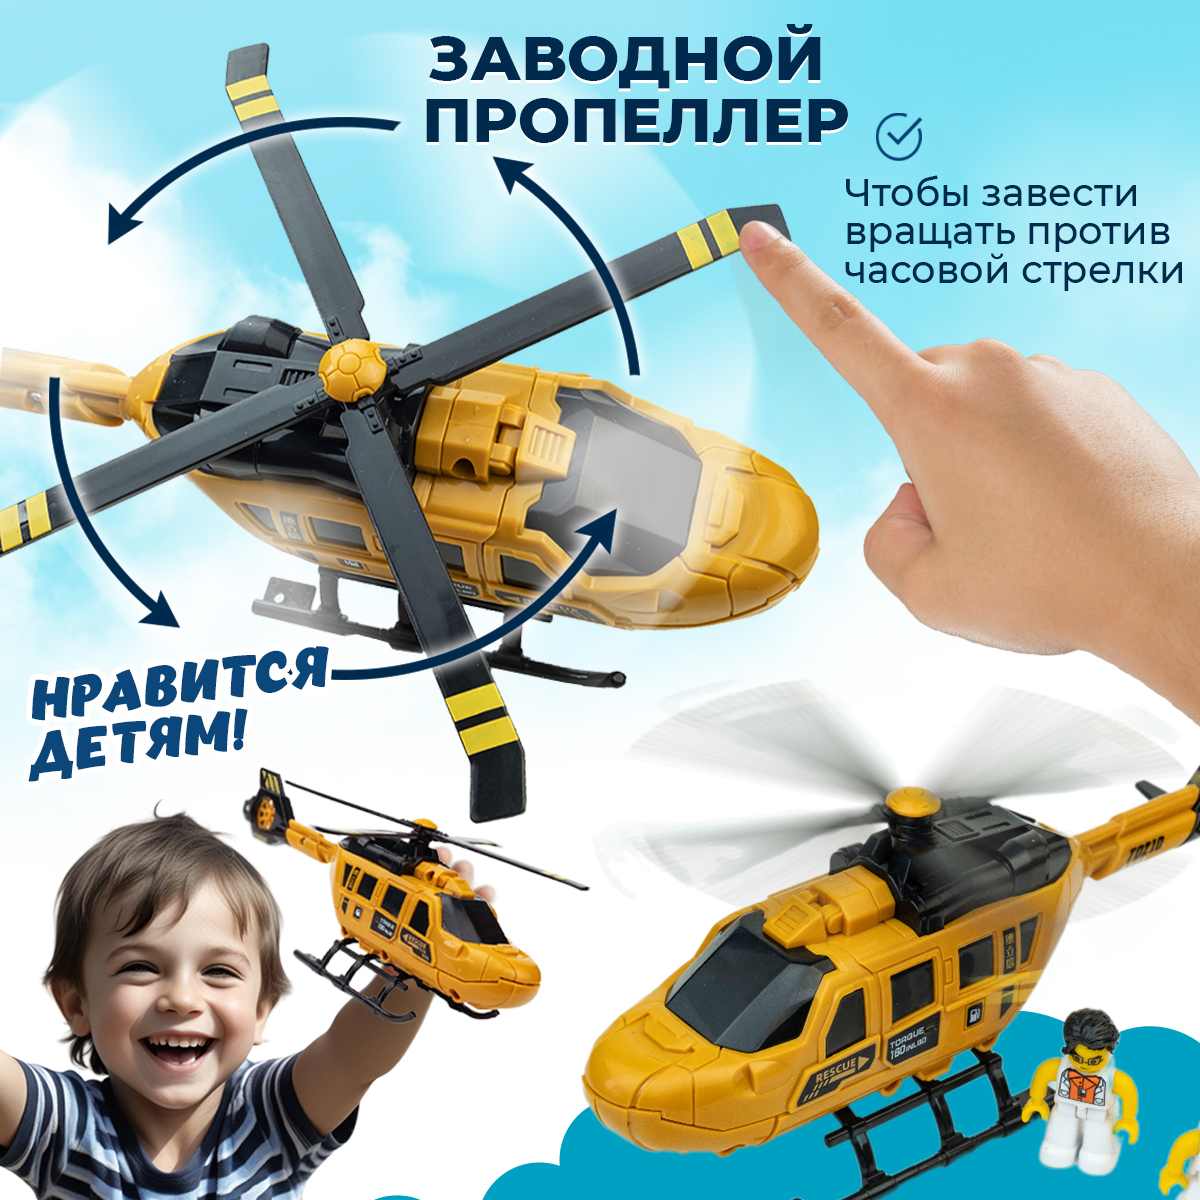 Игрушка Вертолет Libom с пилотом верталет_с_пилотом - фото 4